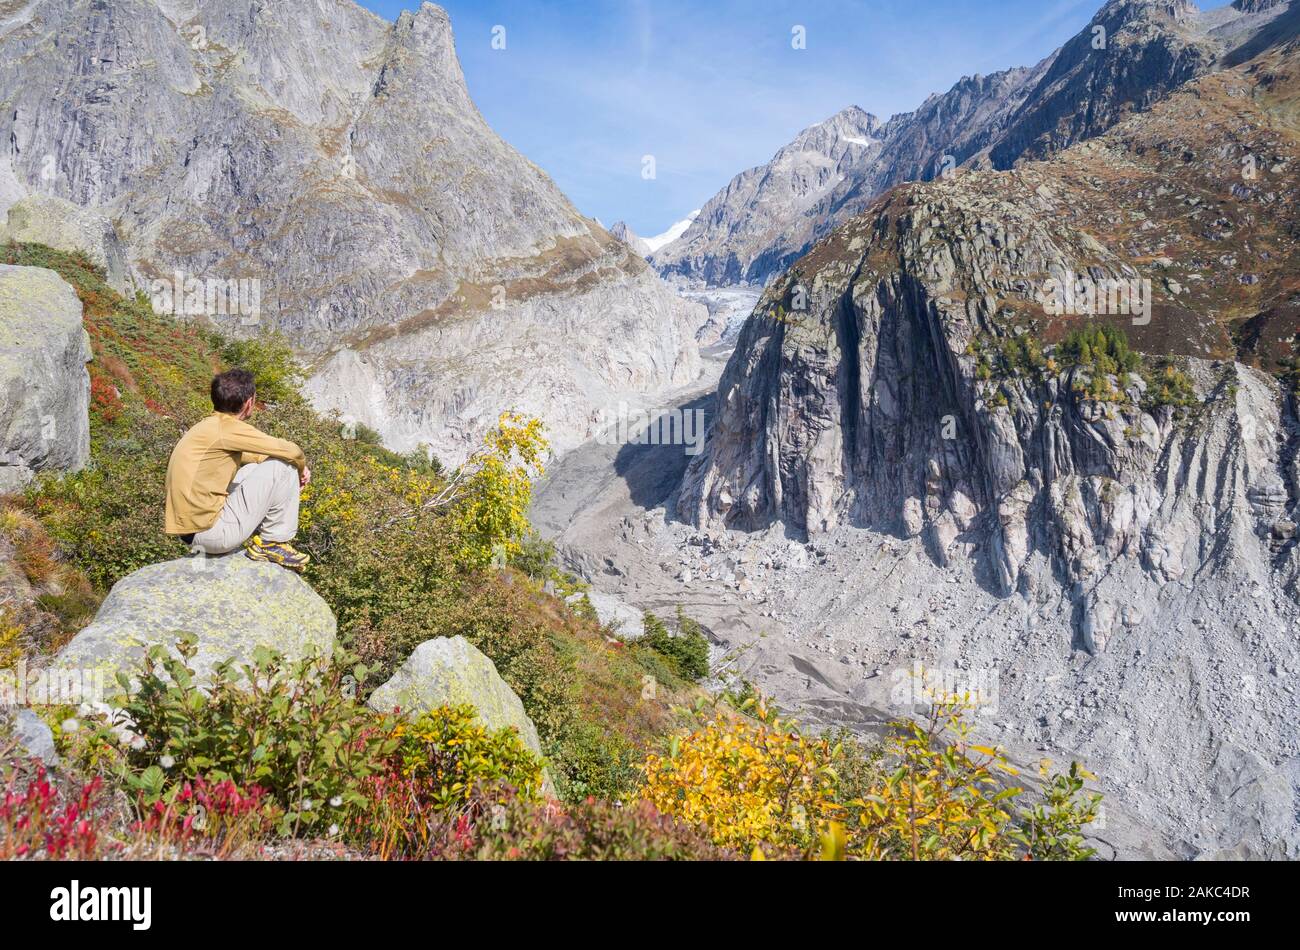 La Svizzera Vallese Aletsch, home al più grande ghiacciaio delle Alpi, Fiesch ritiro del ghiacciaio a causa del riscaldamento globale Foto Stock